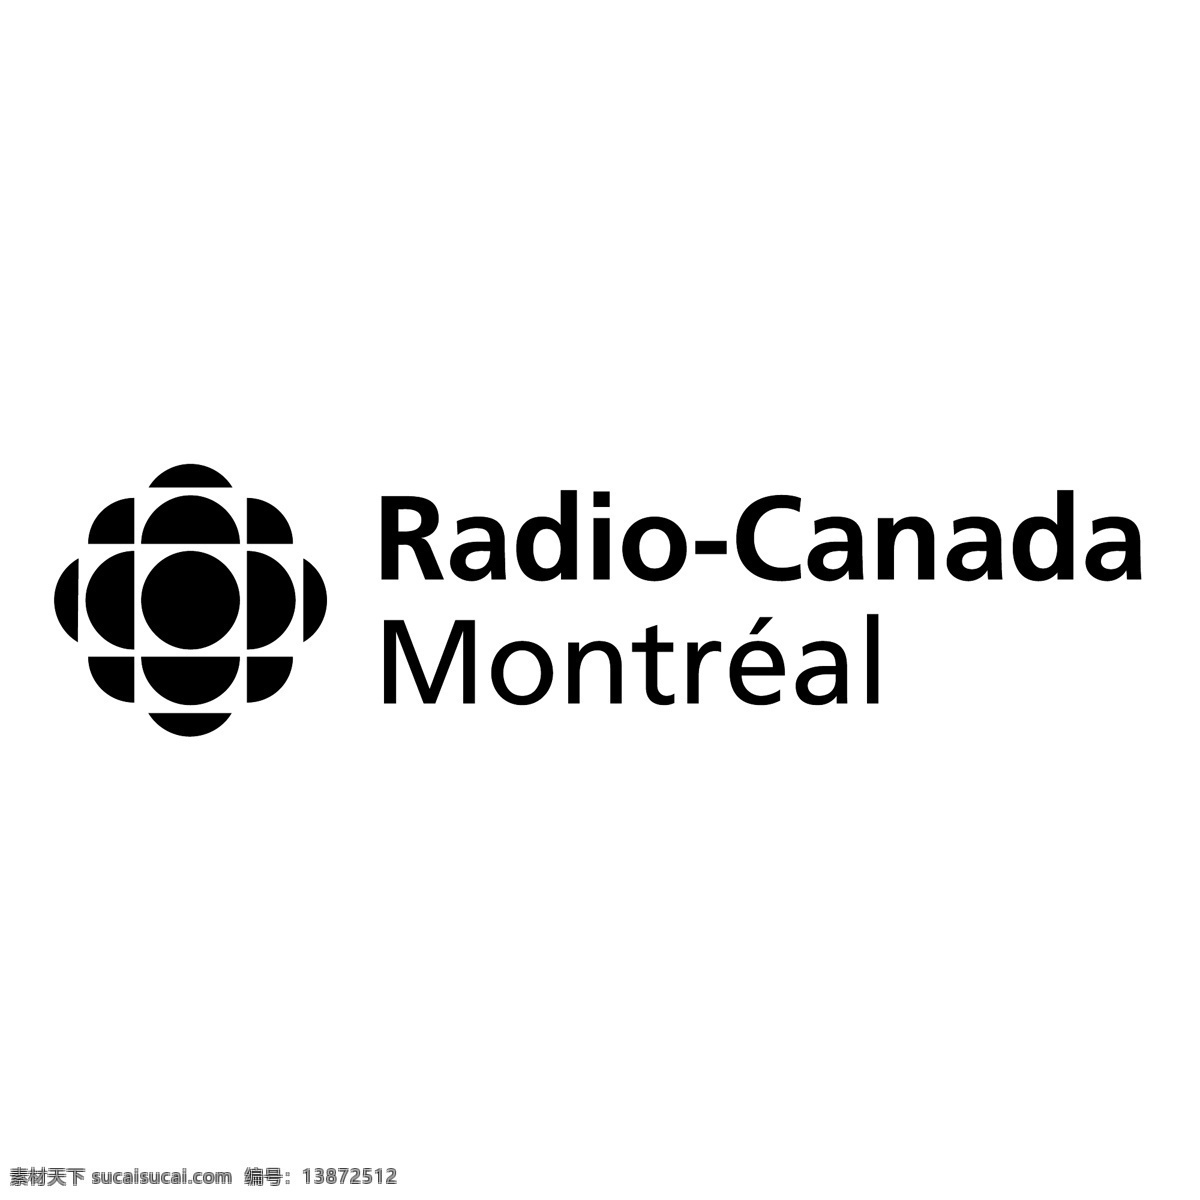 加拿大 广播电台 蒙特利尔 加拿大的载体 cbc电台 电台 载体 该载体 加拿大电台 自由 矢量 矢量图下载 蓝色